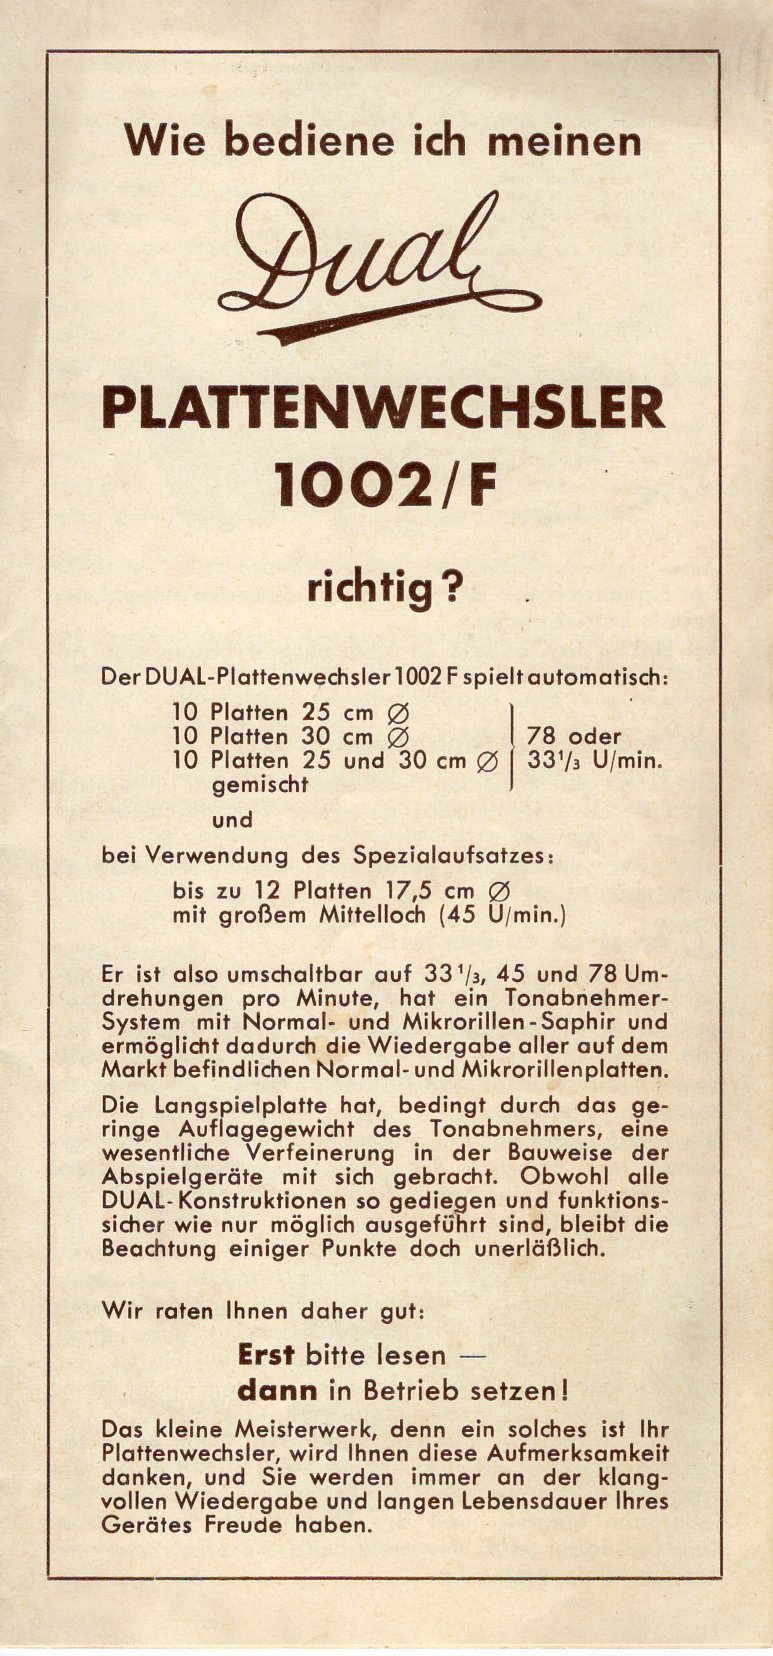 Bedienungsanleitung Dual Plattenwechsel 1002/F (Freilichtmuseum Roscheider Hof CC0)